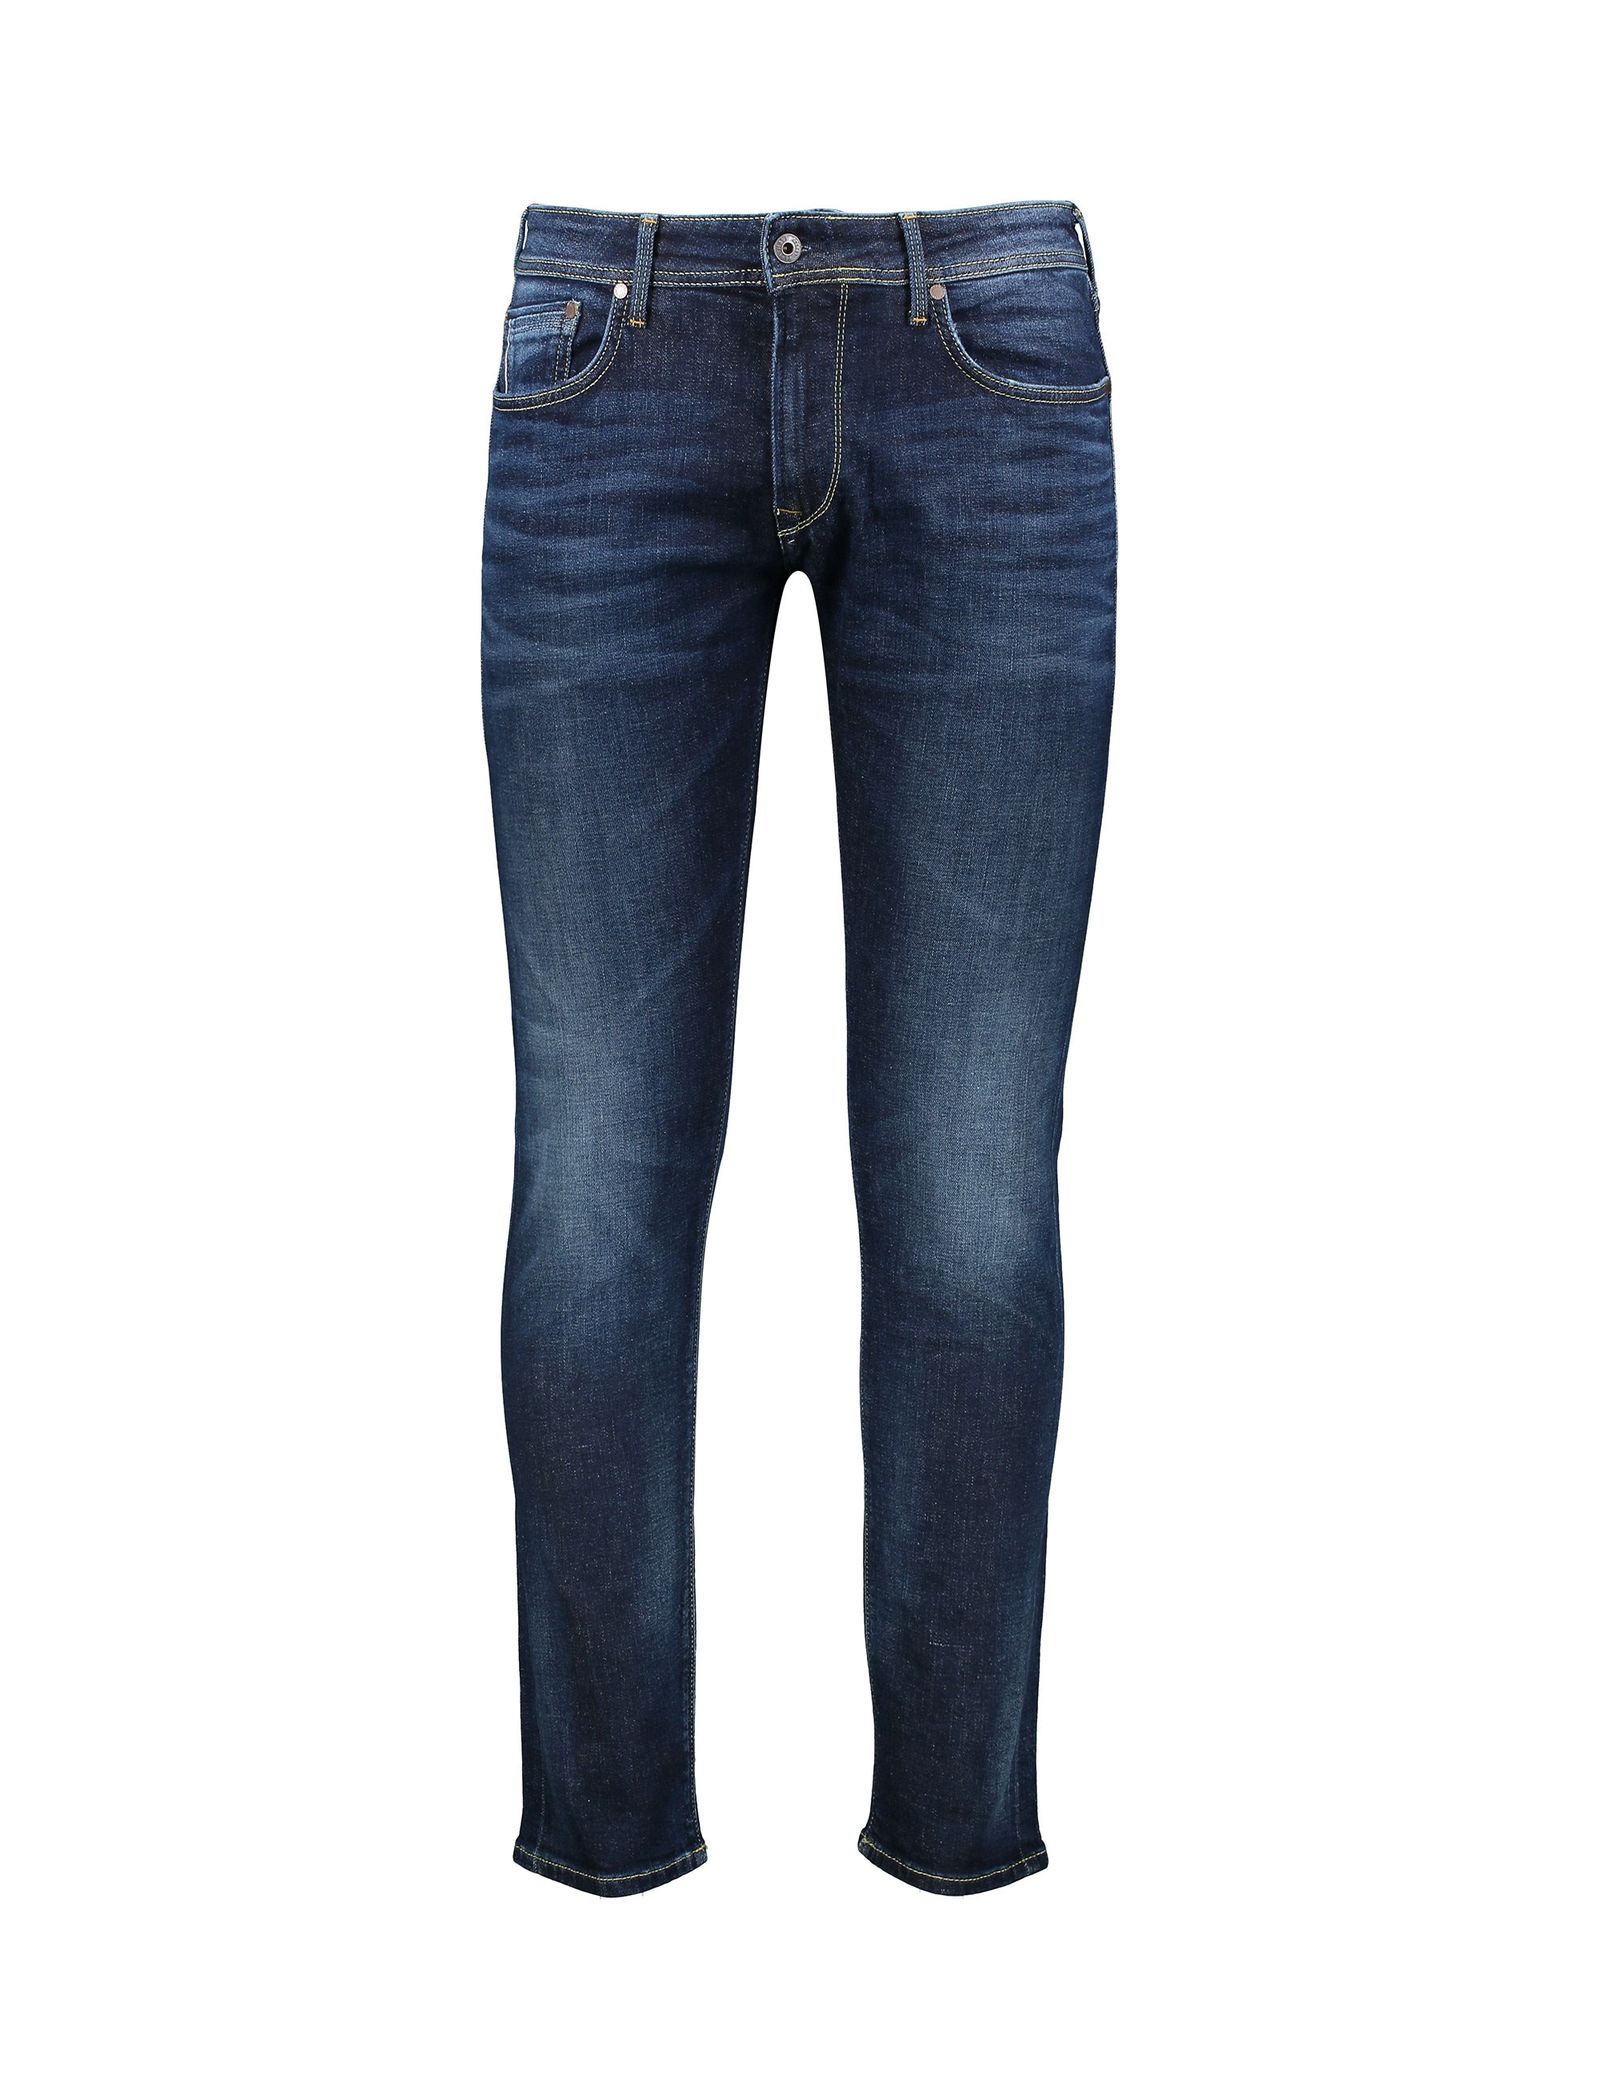 شلوار جین راسته مردانه - پپه جینز - سرمه اي - 2